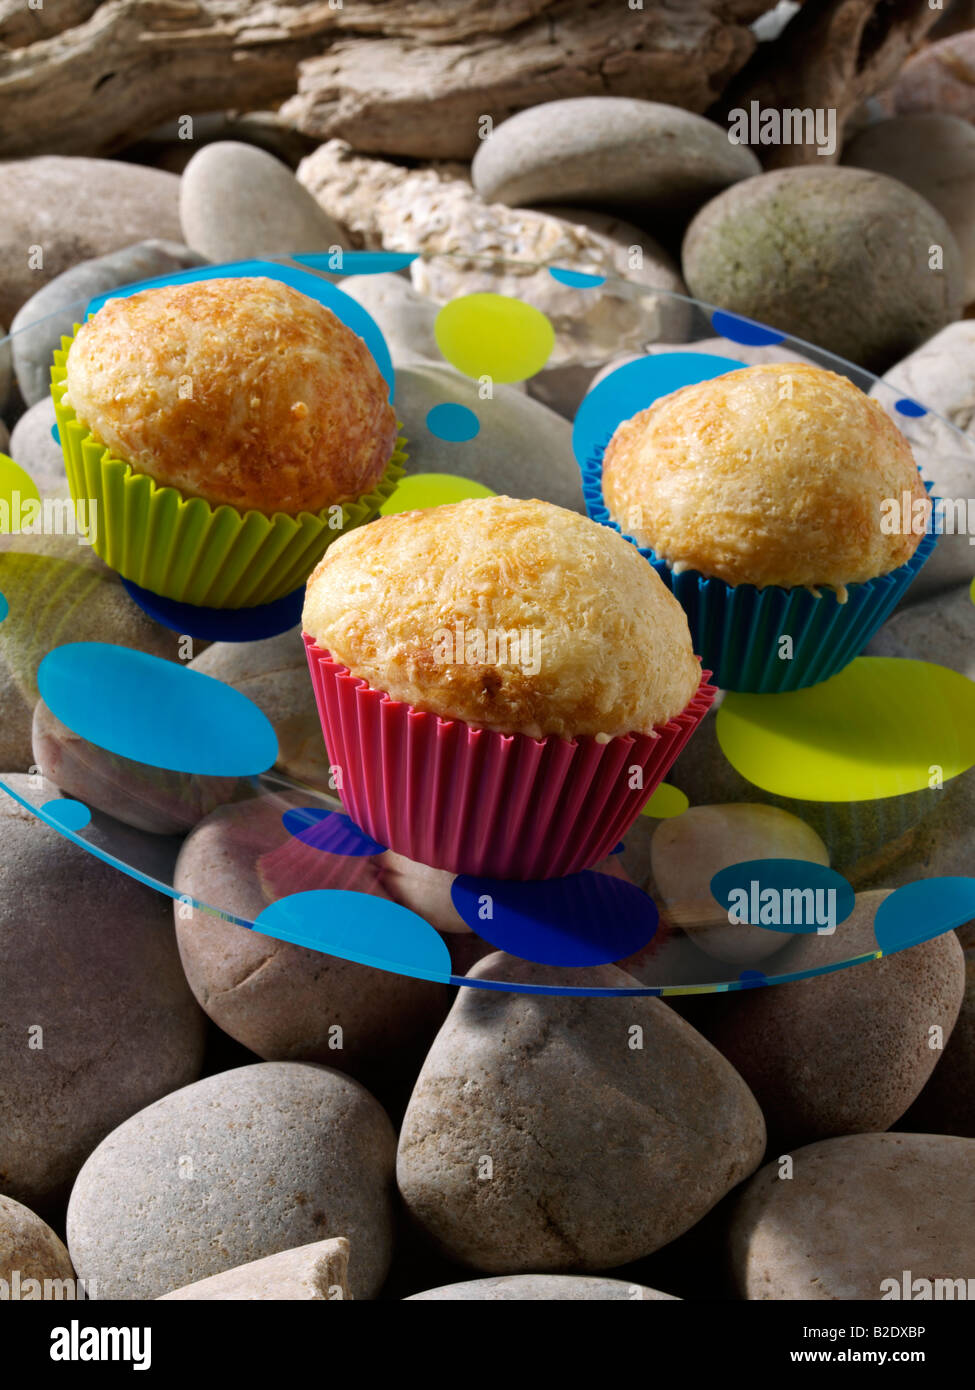 Muffins auf einem Strand Picknick redaktionelle Essen Stockfoto